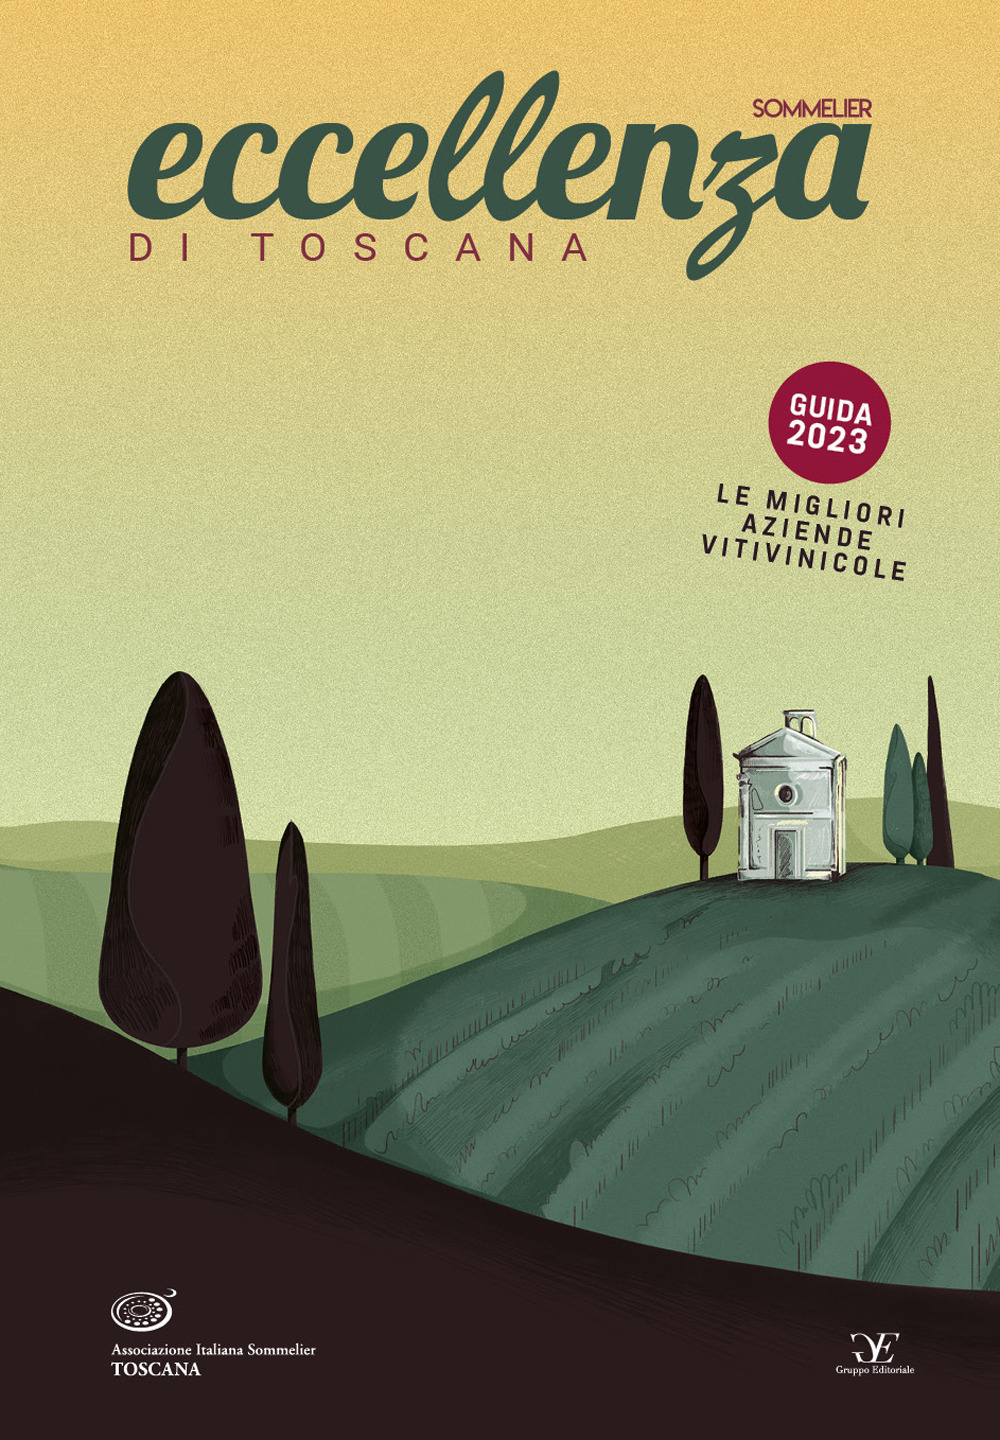 Eccellenza di Toscana Guida 2023. Le migliori aziende vitivinicole